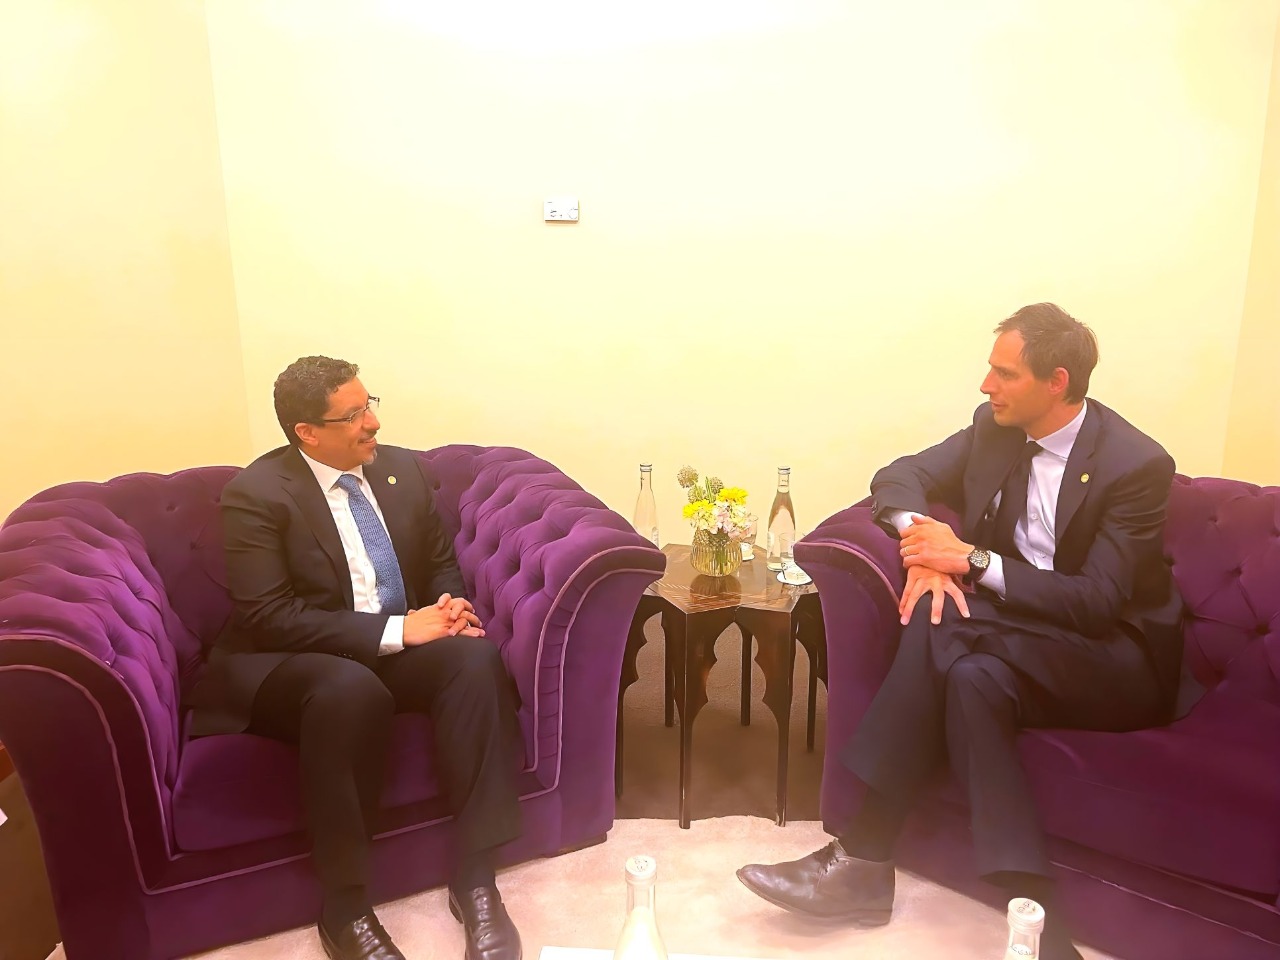 وزير الخارجية يناقش مع نظيره الهولندي الترتيبات لتنظيم مؤتمر دولي لمعالجة وضع خزان صافر